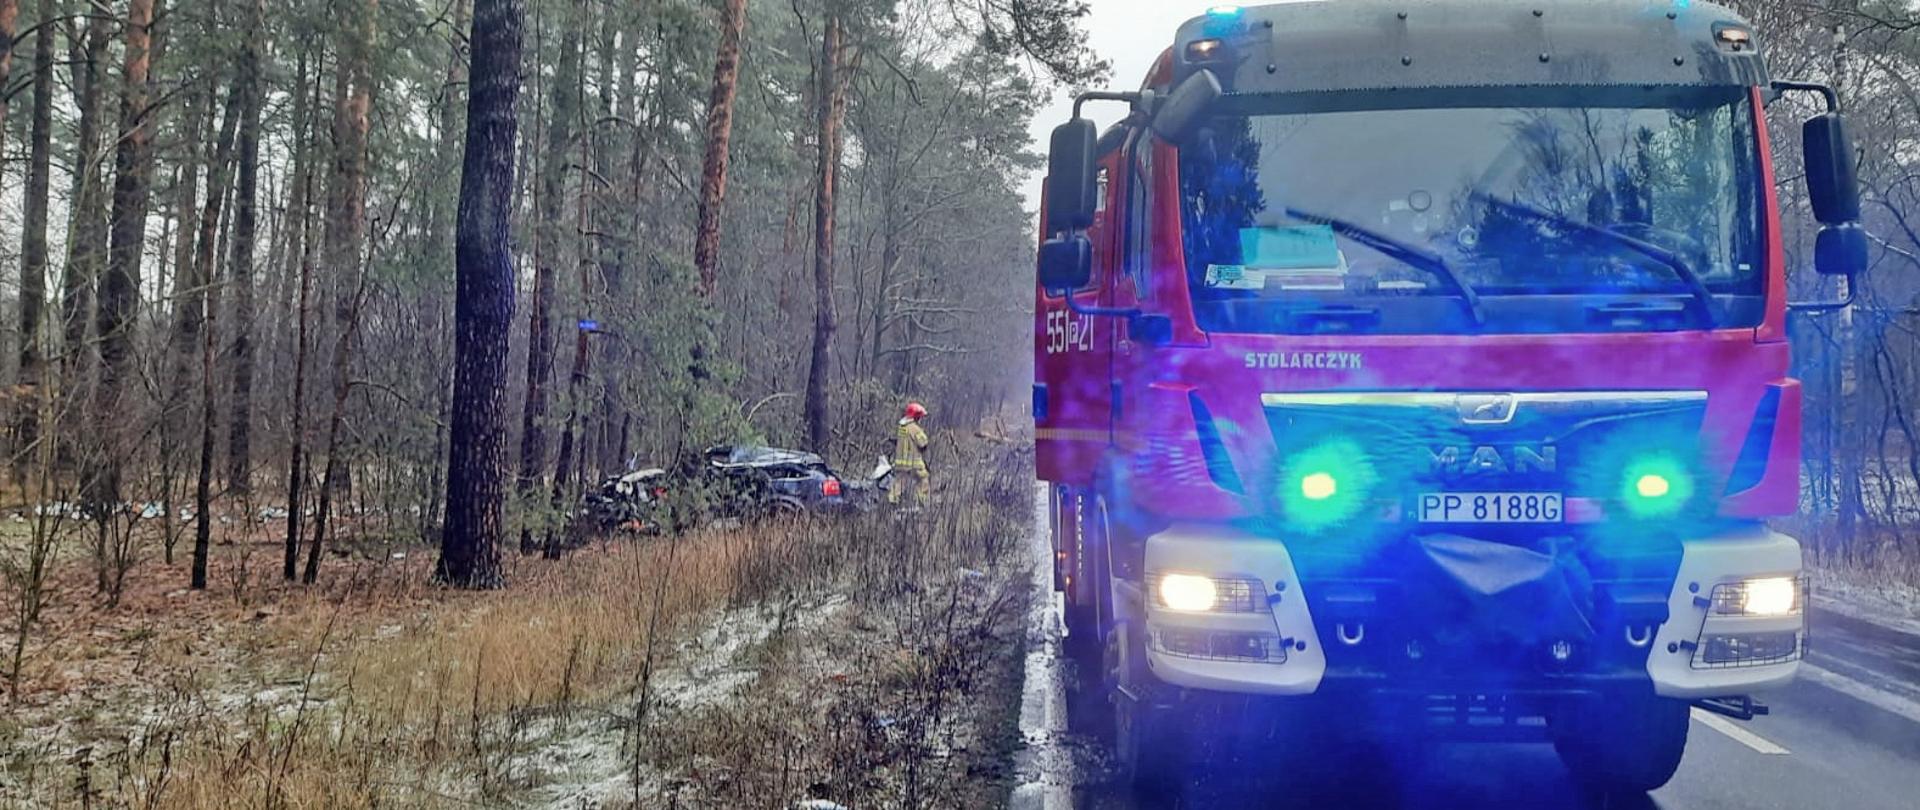 Na zdjęciu widać samochód pożarniczy na pierwszym planie. Dalej w lesie stoi uszkodzony pojazd a obok strażak.